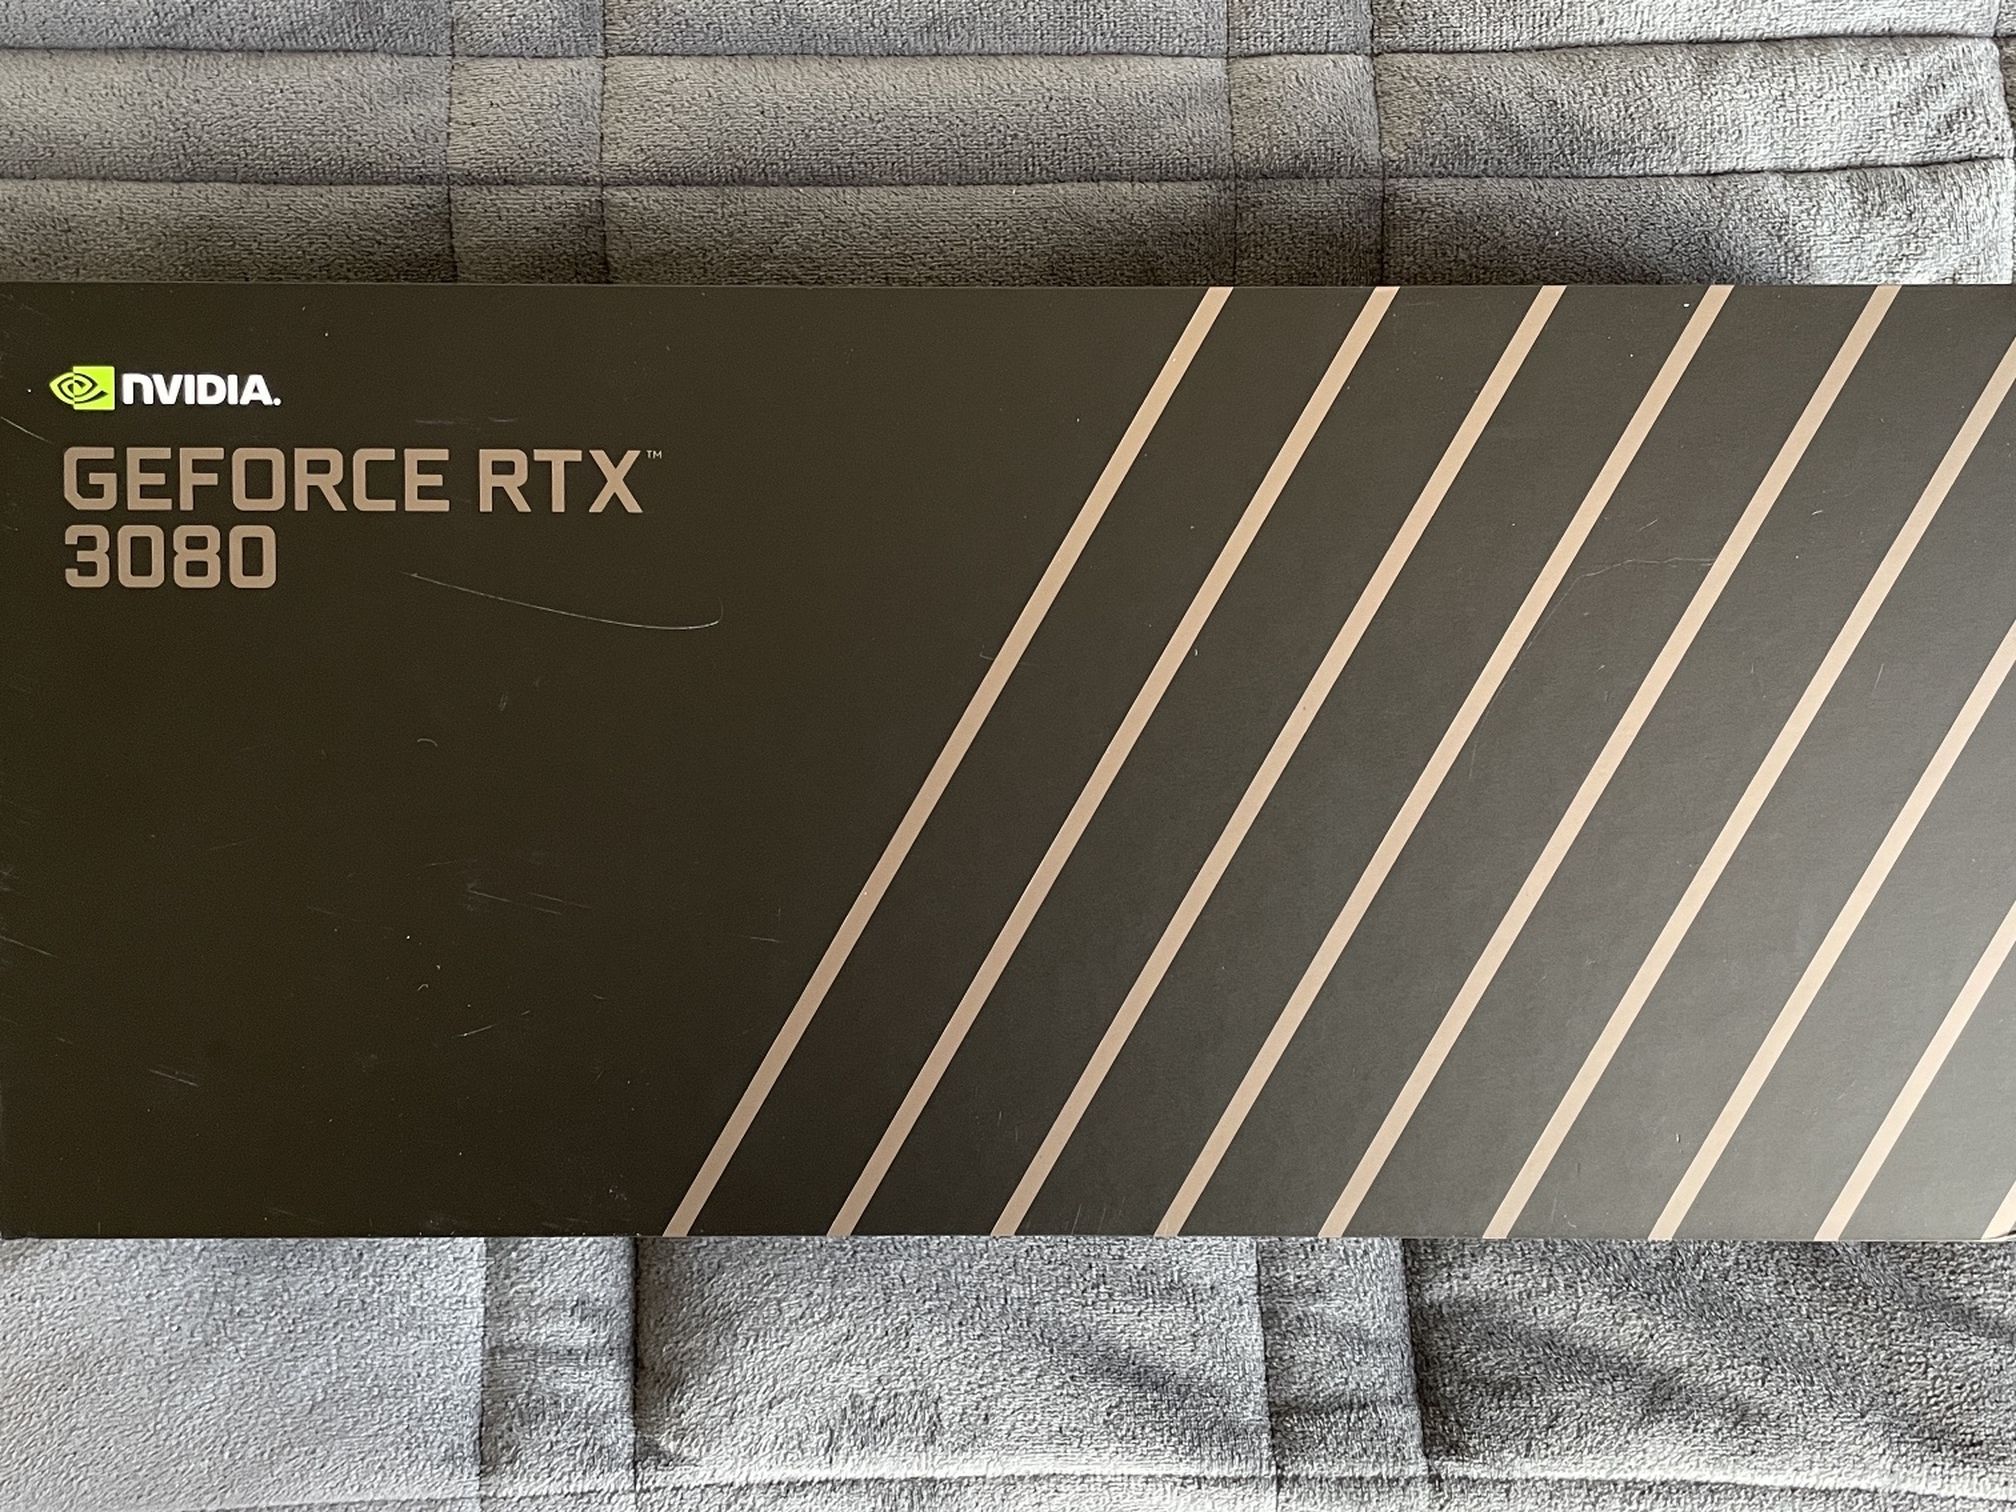 Nvidia GeForce RTX 3080 - Sealed